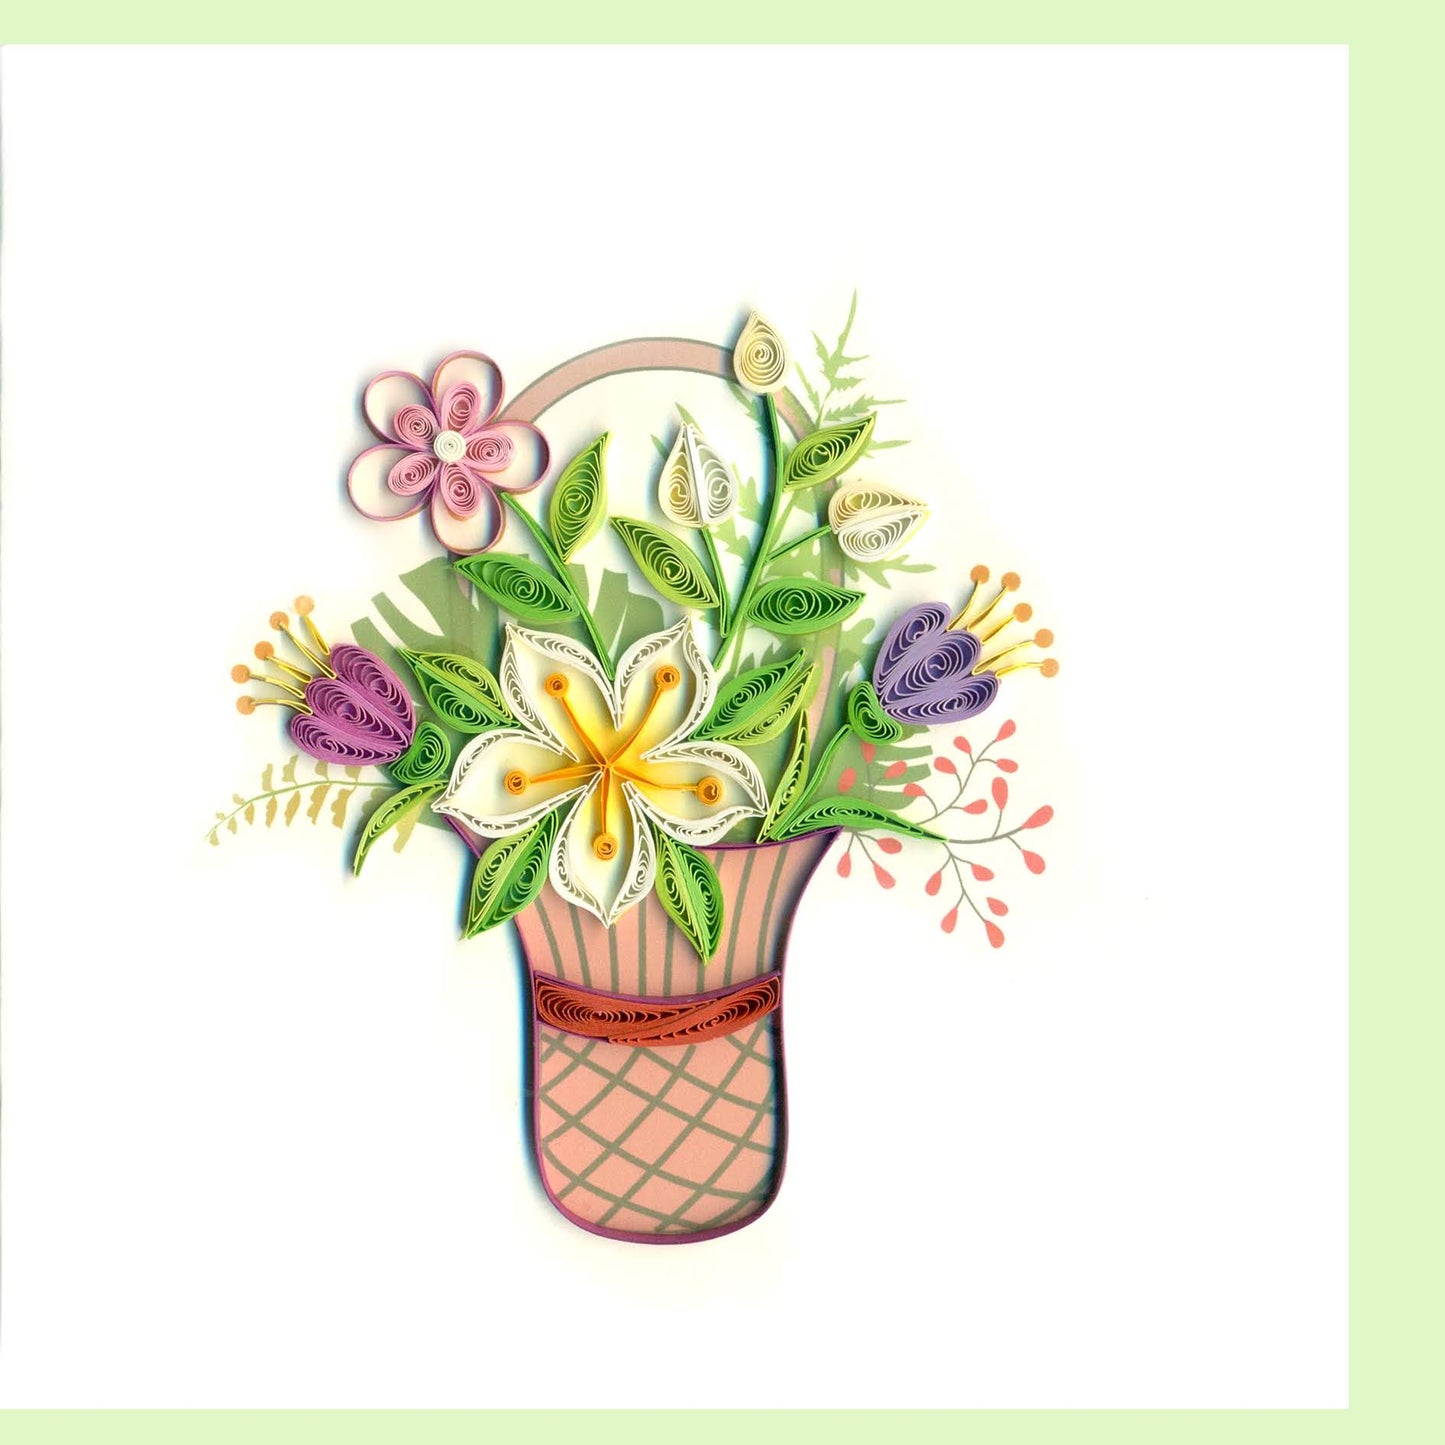 Flower Basket Quilling Card